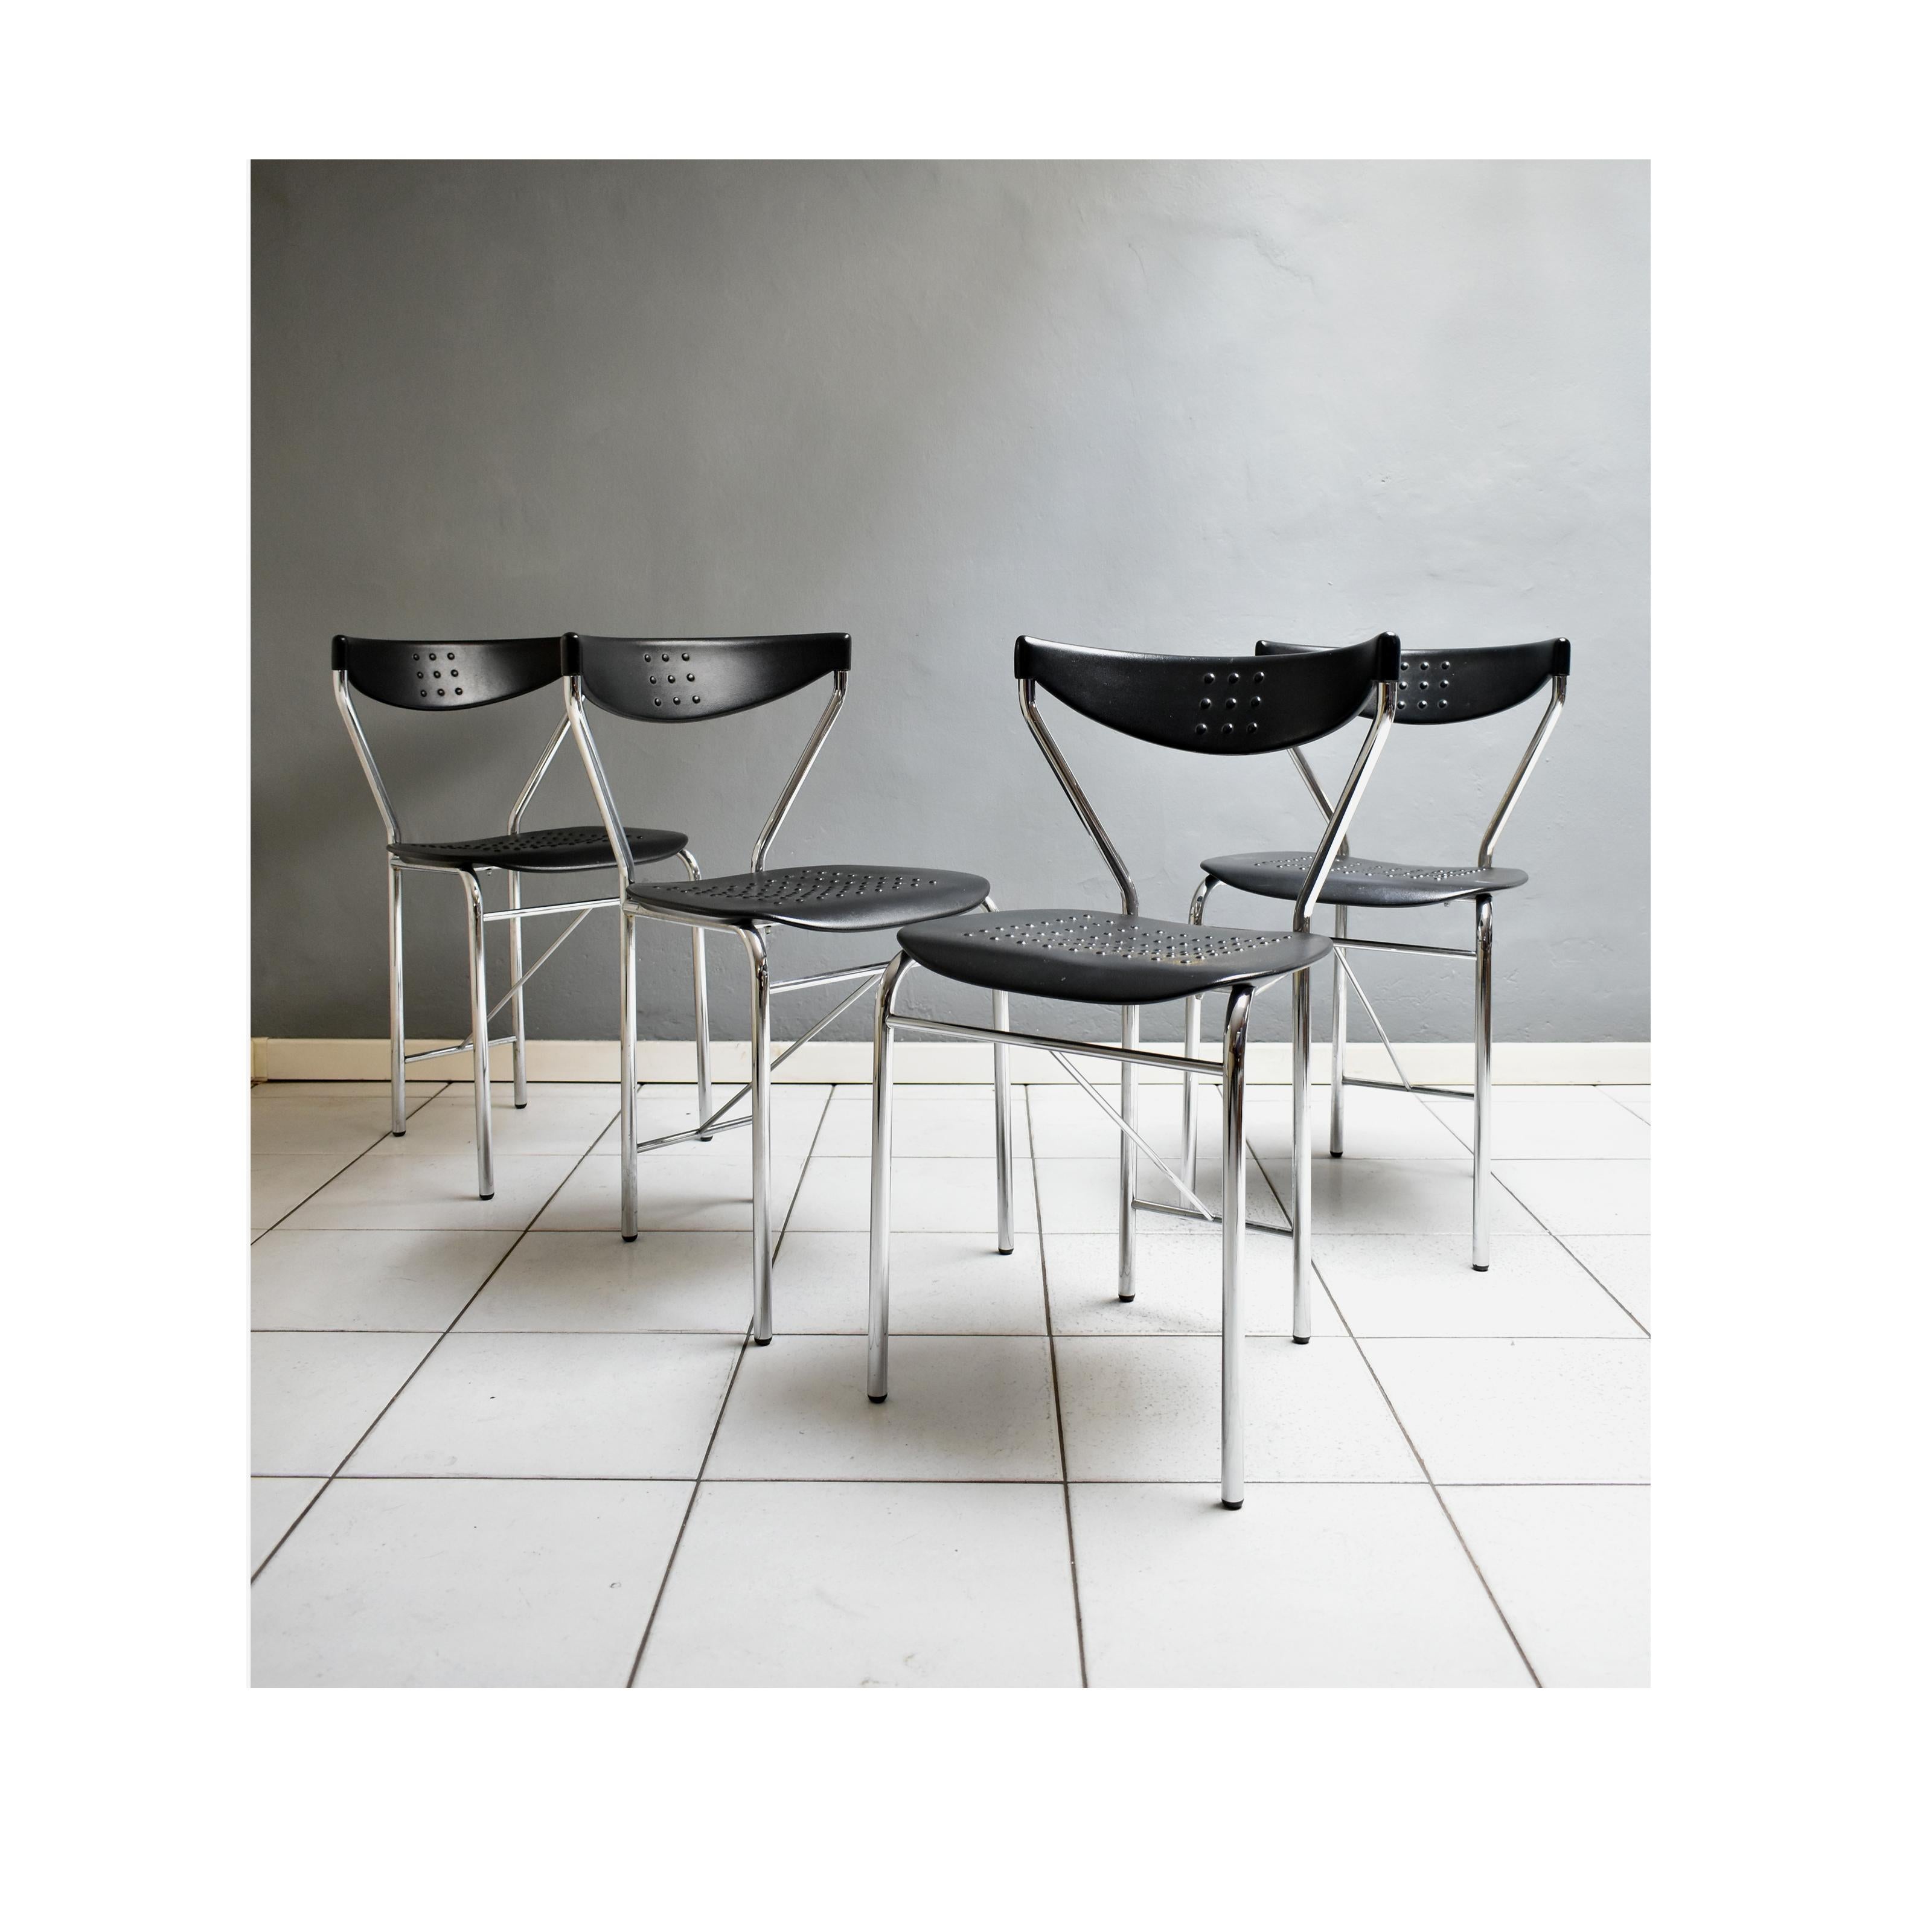 Ensemble de quatre chaises vintage des années 80, fabrication italienne, design par Citterio cucine.
Les chaises ont une structure en acier avec une assise et un dossier en caoutchouc noir.
Excellent état vintage ; cependant, ils peuvent présenter